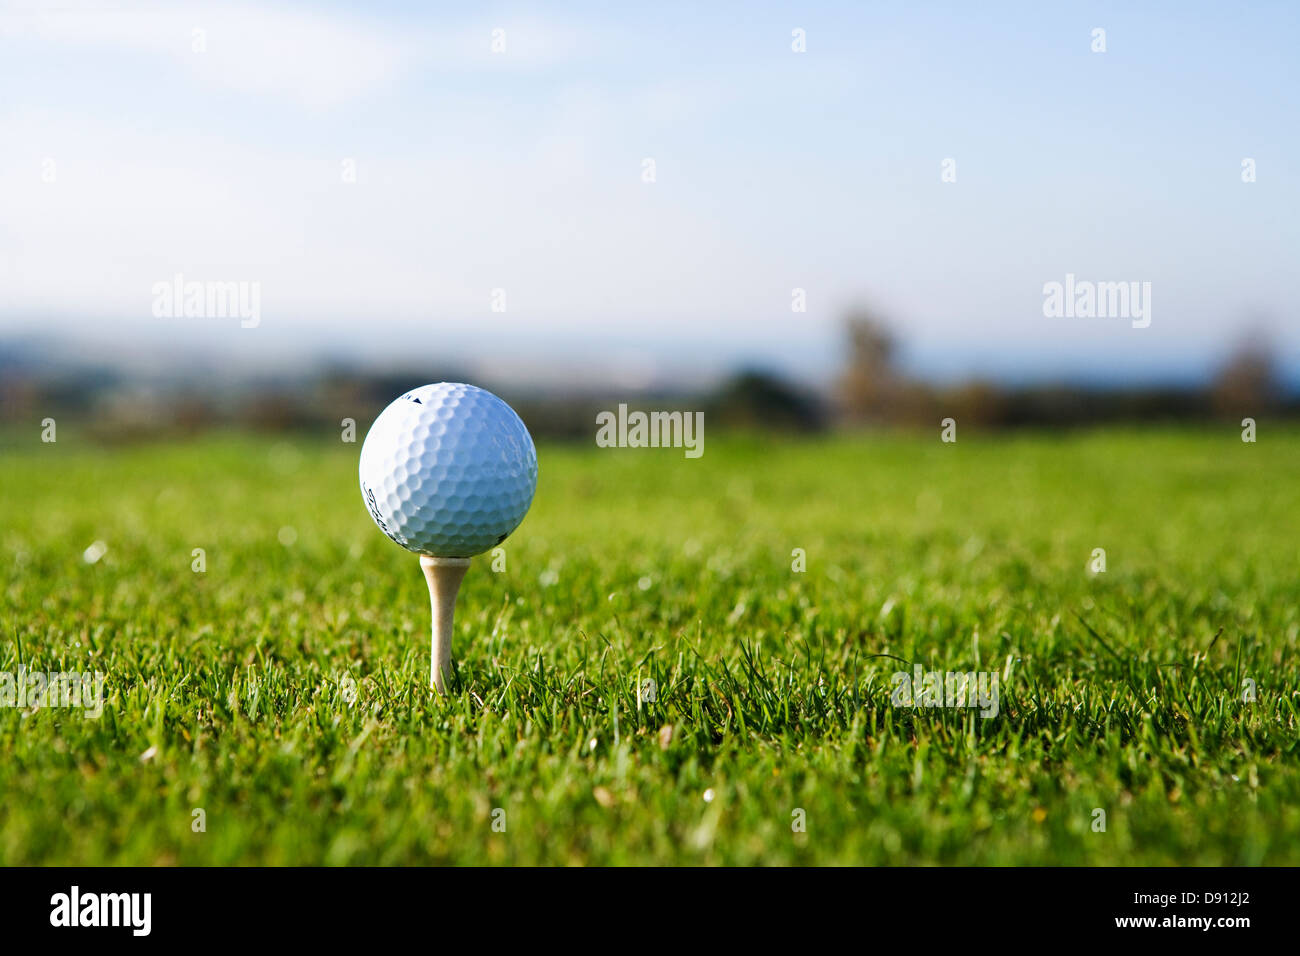 Golfball on peg, close-up. Stock Photo